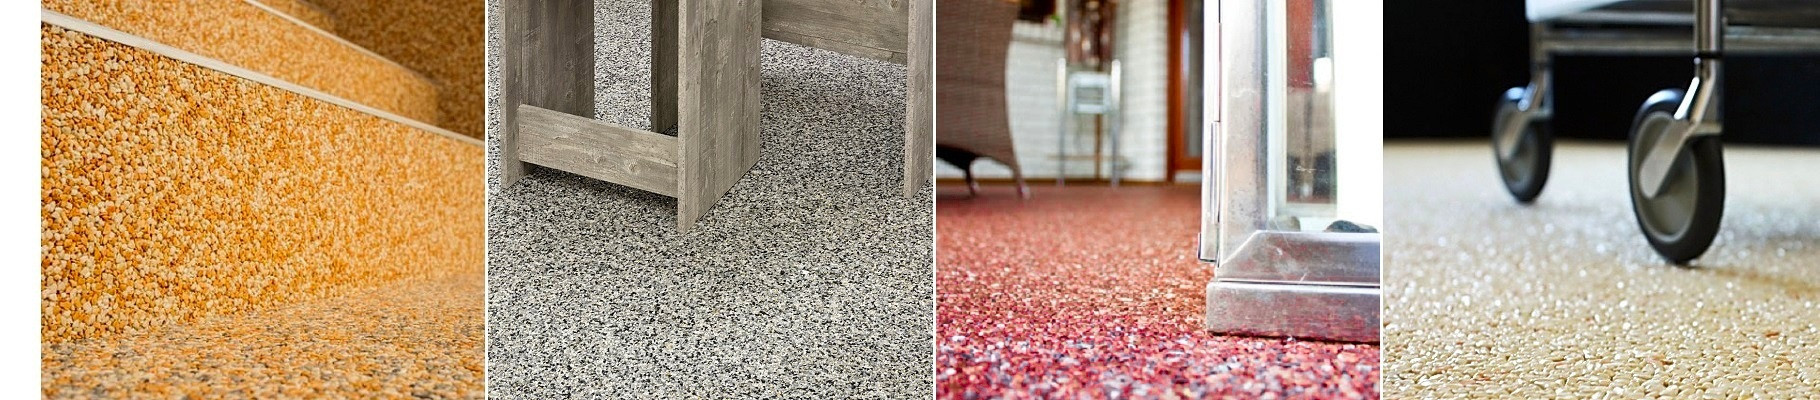 Kamenný koberec 1-2mm - Interiér - Imitace přírodních povrchů